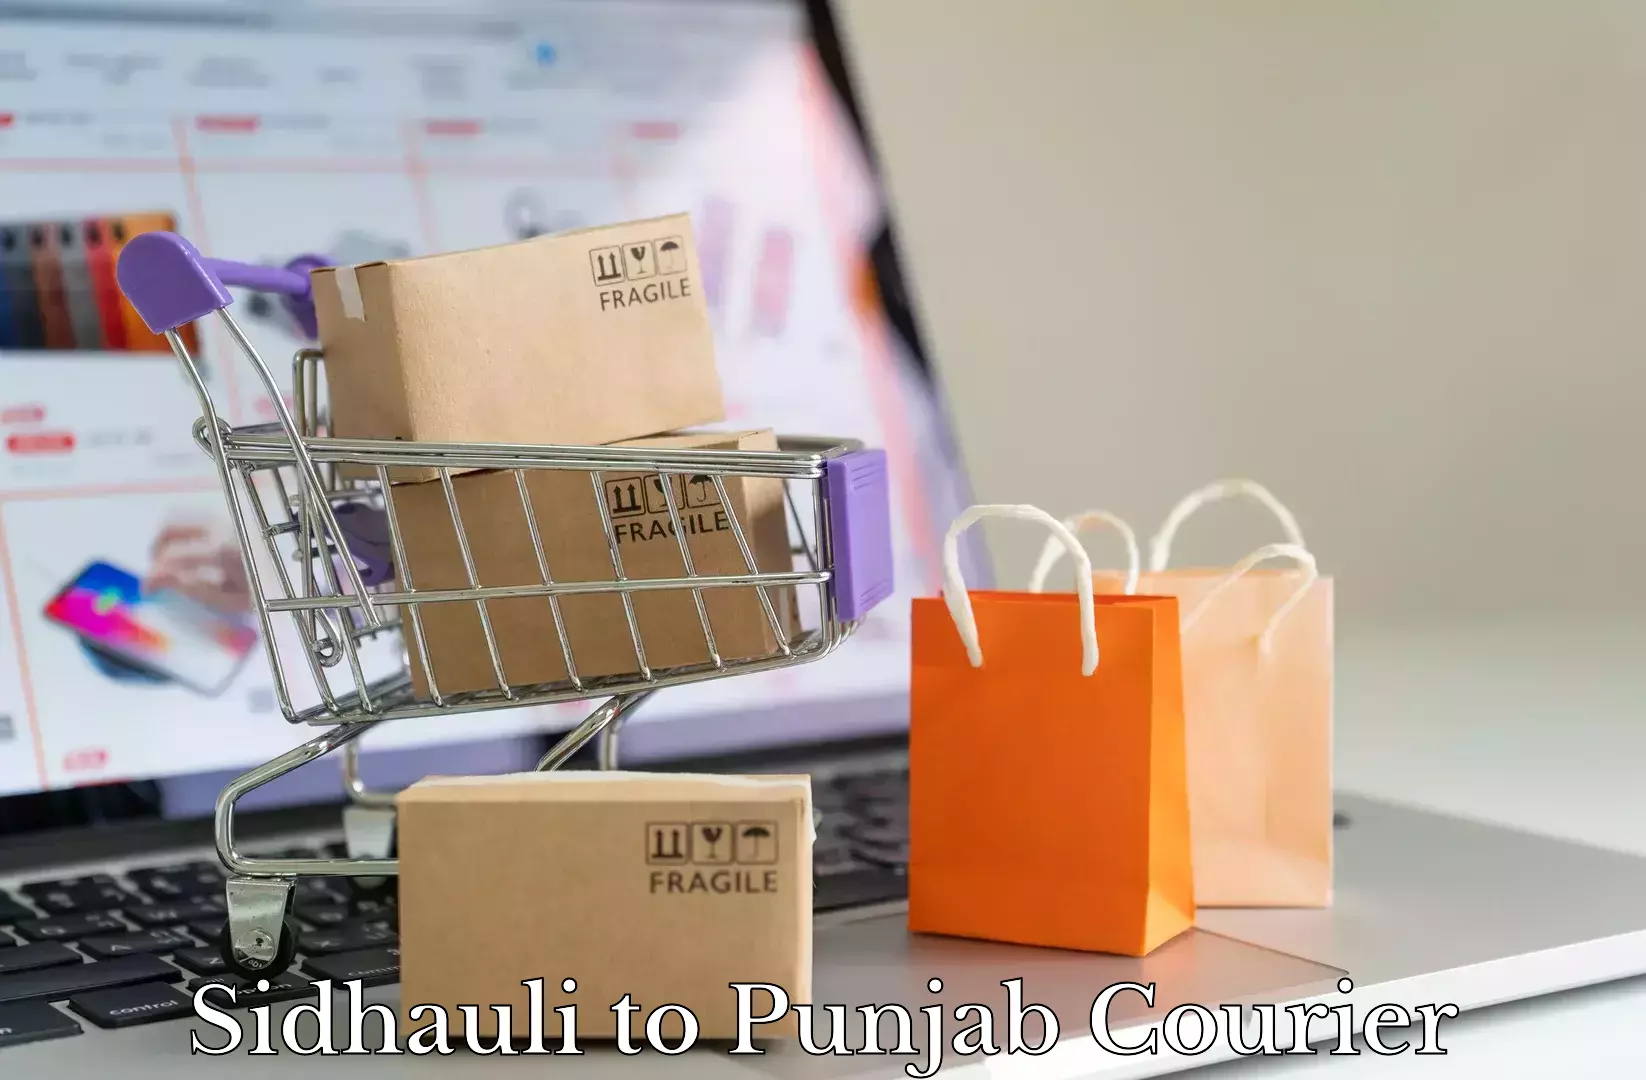 Premium furniture transport Sidhauli to Punjab